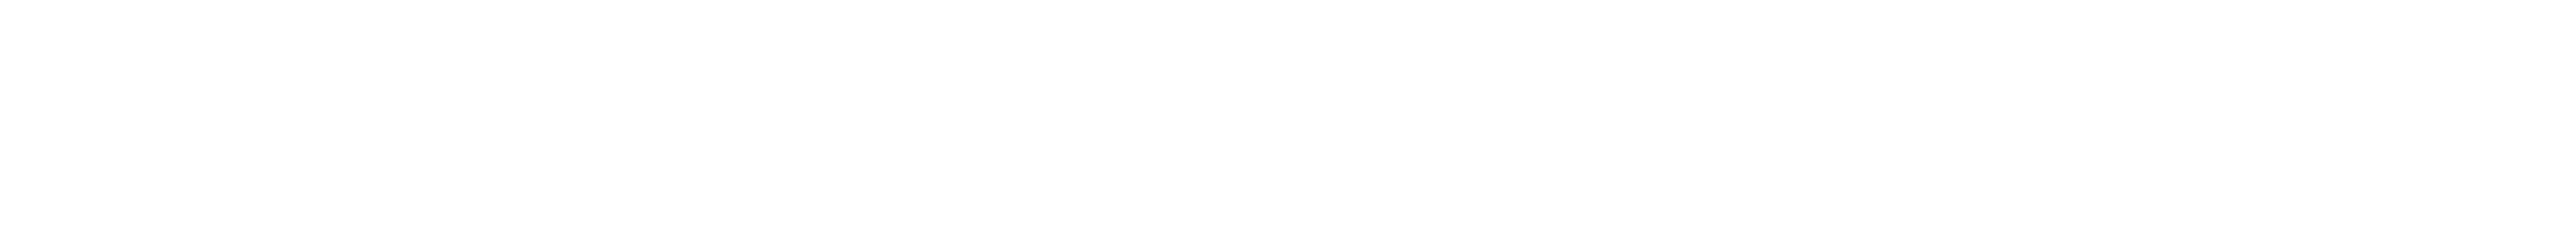 2022年から2023年までの路